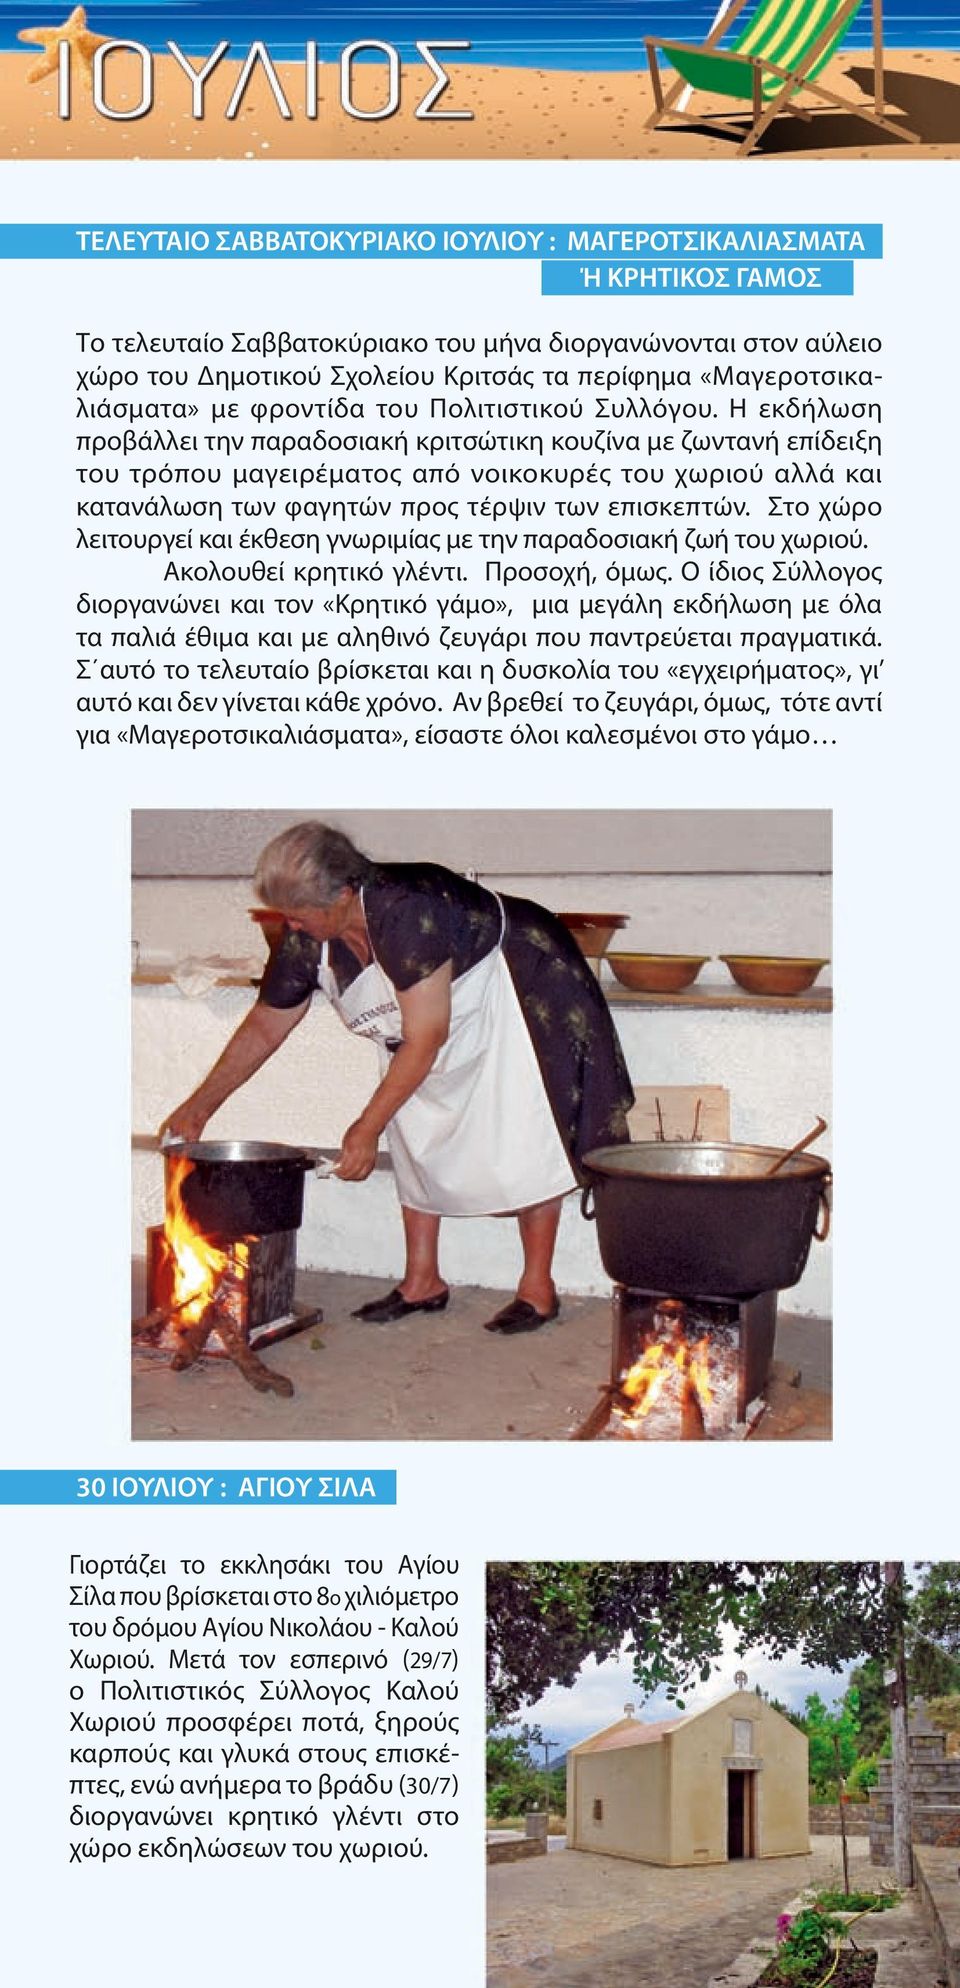 Η εκδήλωση προβάλλει την παραδοσιακή κριτσώτικη κουζίνα με ζωντανή επίδειξη του τρόπου μαγειρέματος από νοικοκυρές του χωριού αλλά και κατανάλωση των φαγητών προς τέρψιν των επισκεπτών.